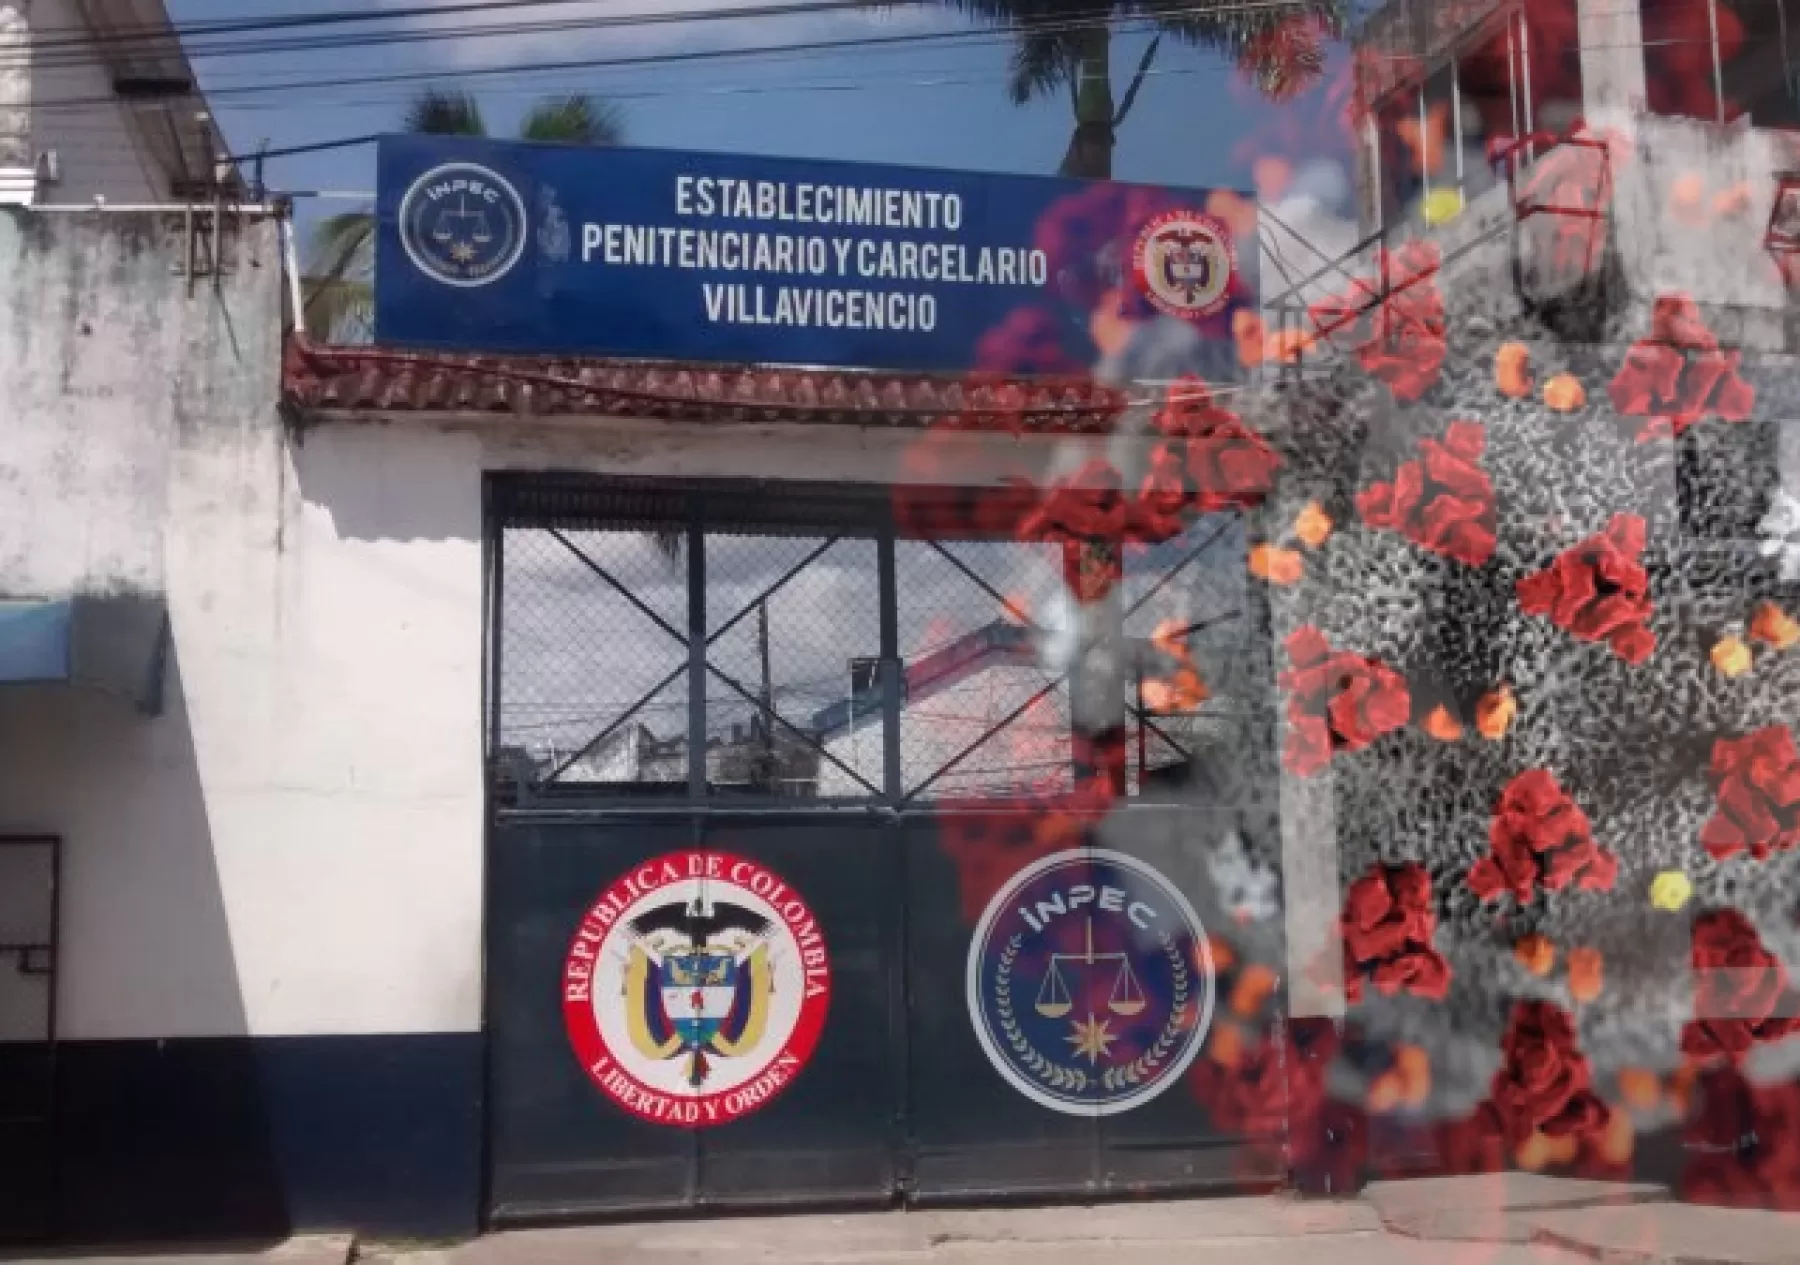 Confirman seis nuevos casos de Covid-19 en la cárcel de Villavicencio, el número de infectados aumenta a 24 casos en este penal colombiano.